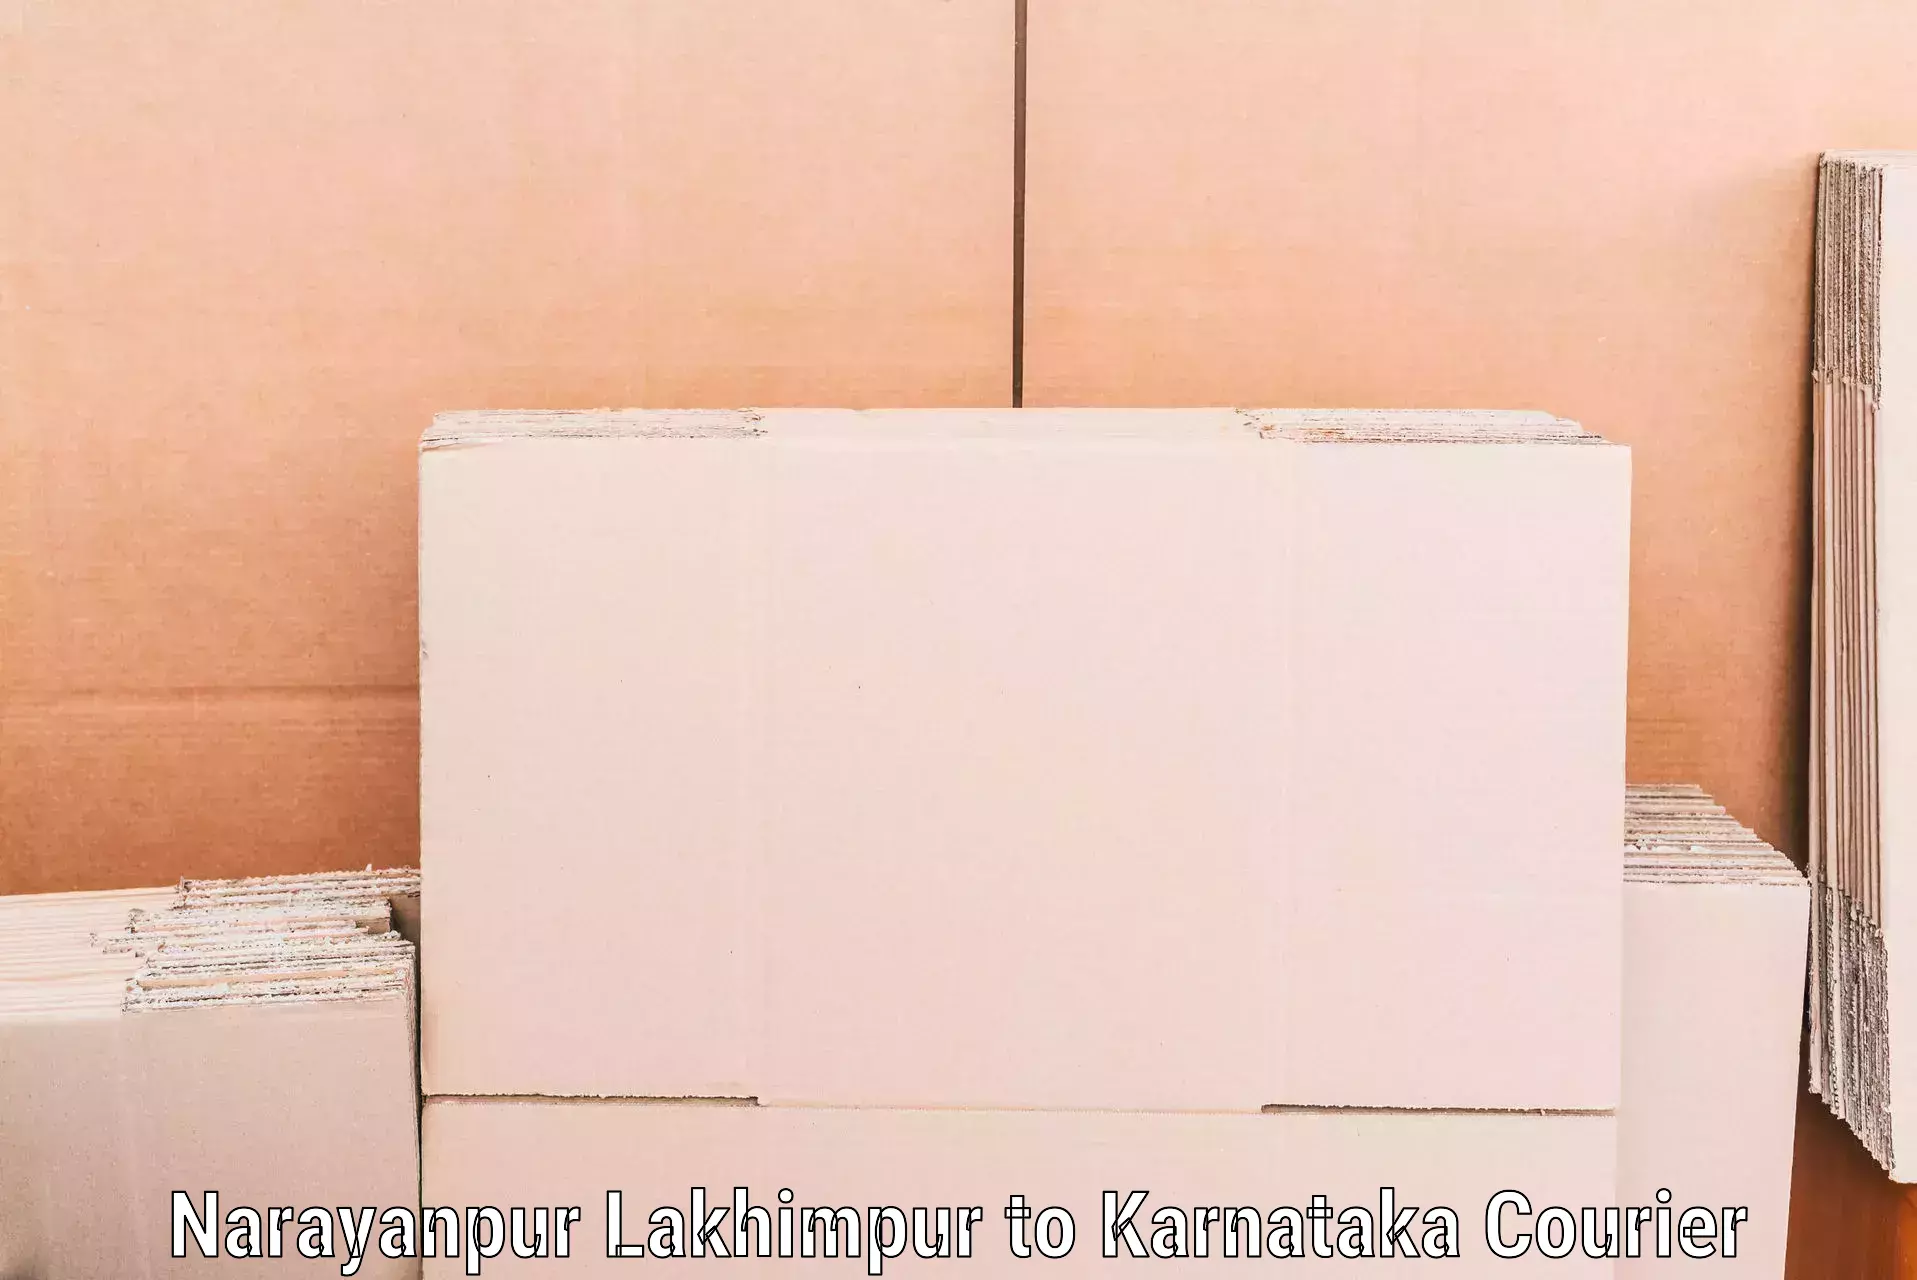 Furniture moving experts Narayanpur Lakhimpur to Jalahalli